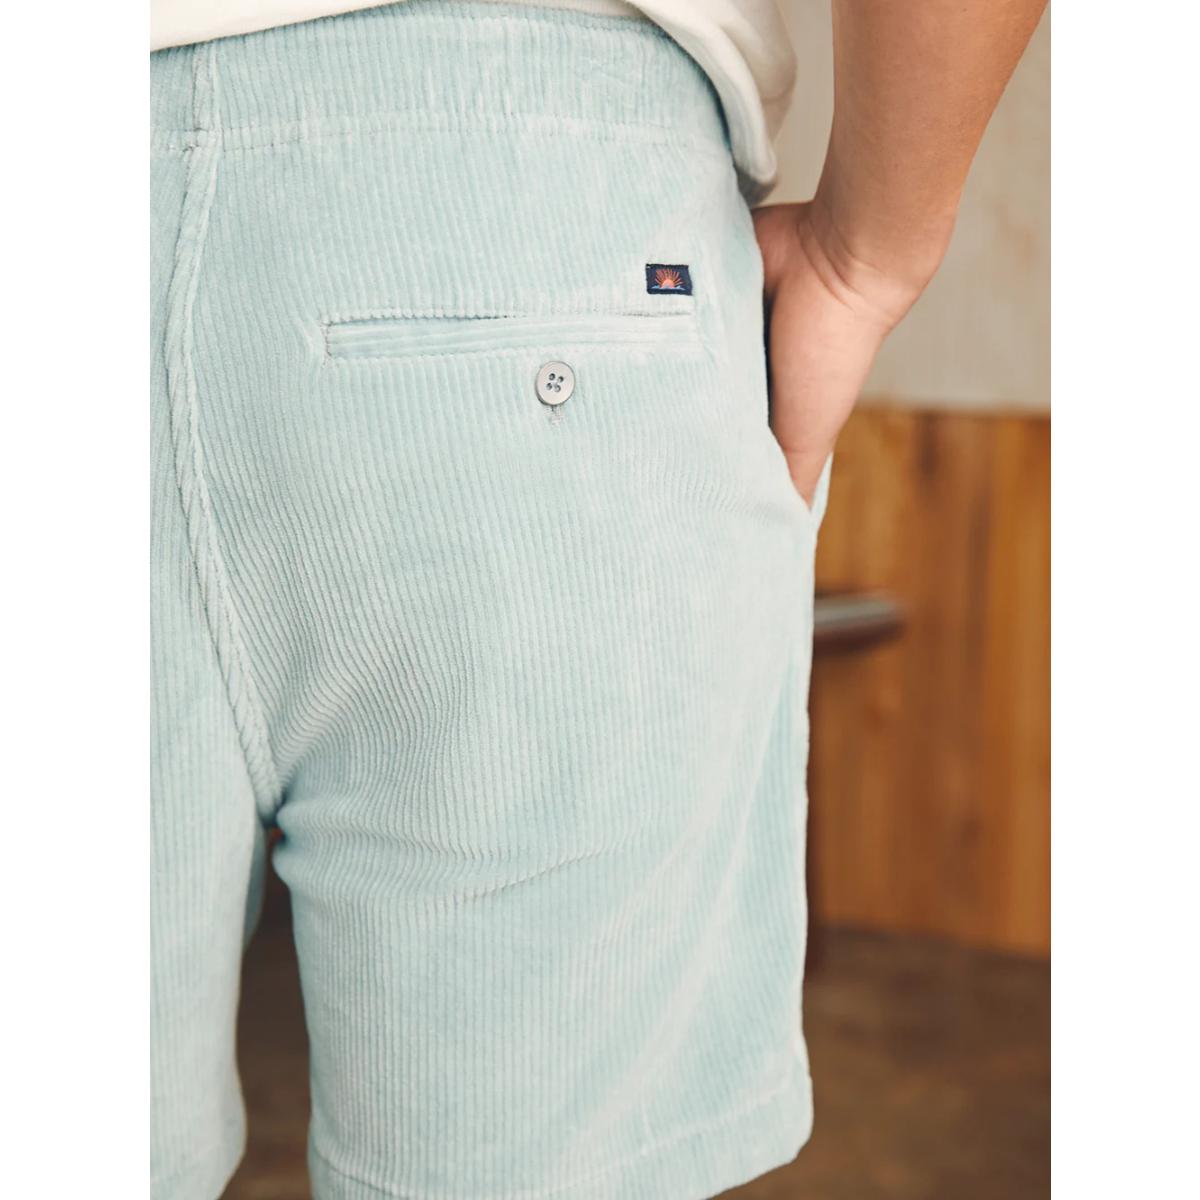 Essential Italian Knit Cord Short Gulf Blue - Shorts